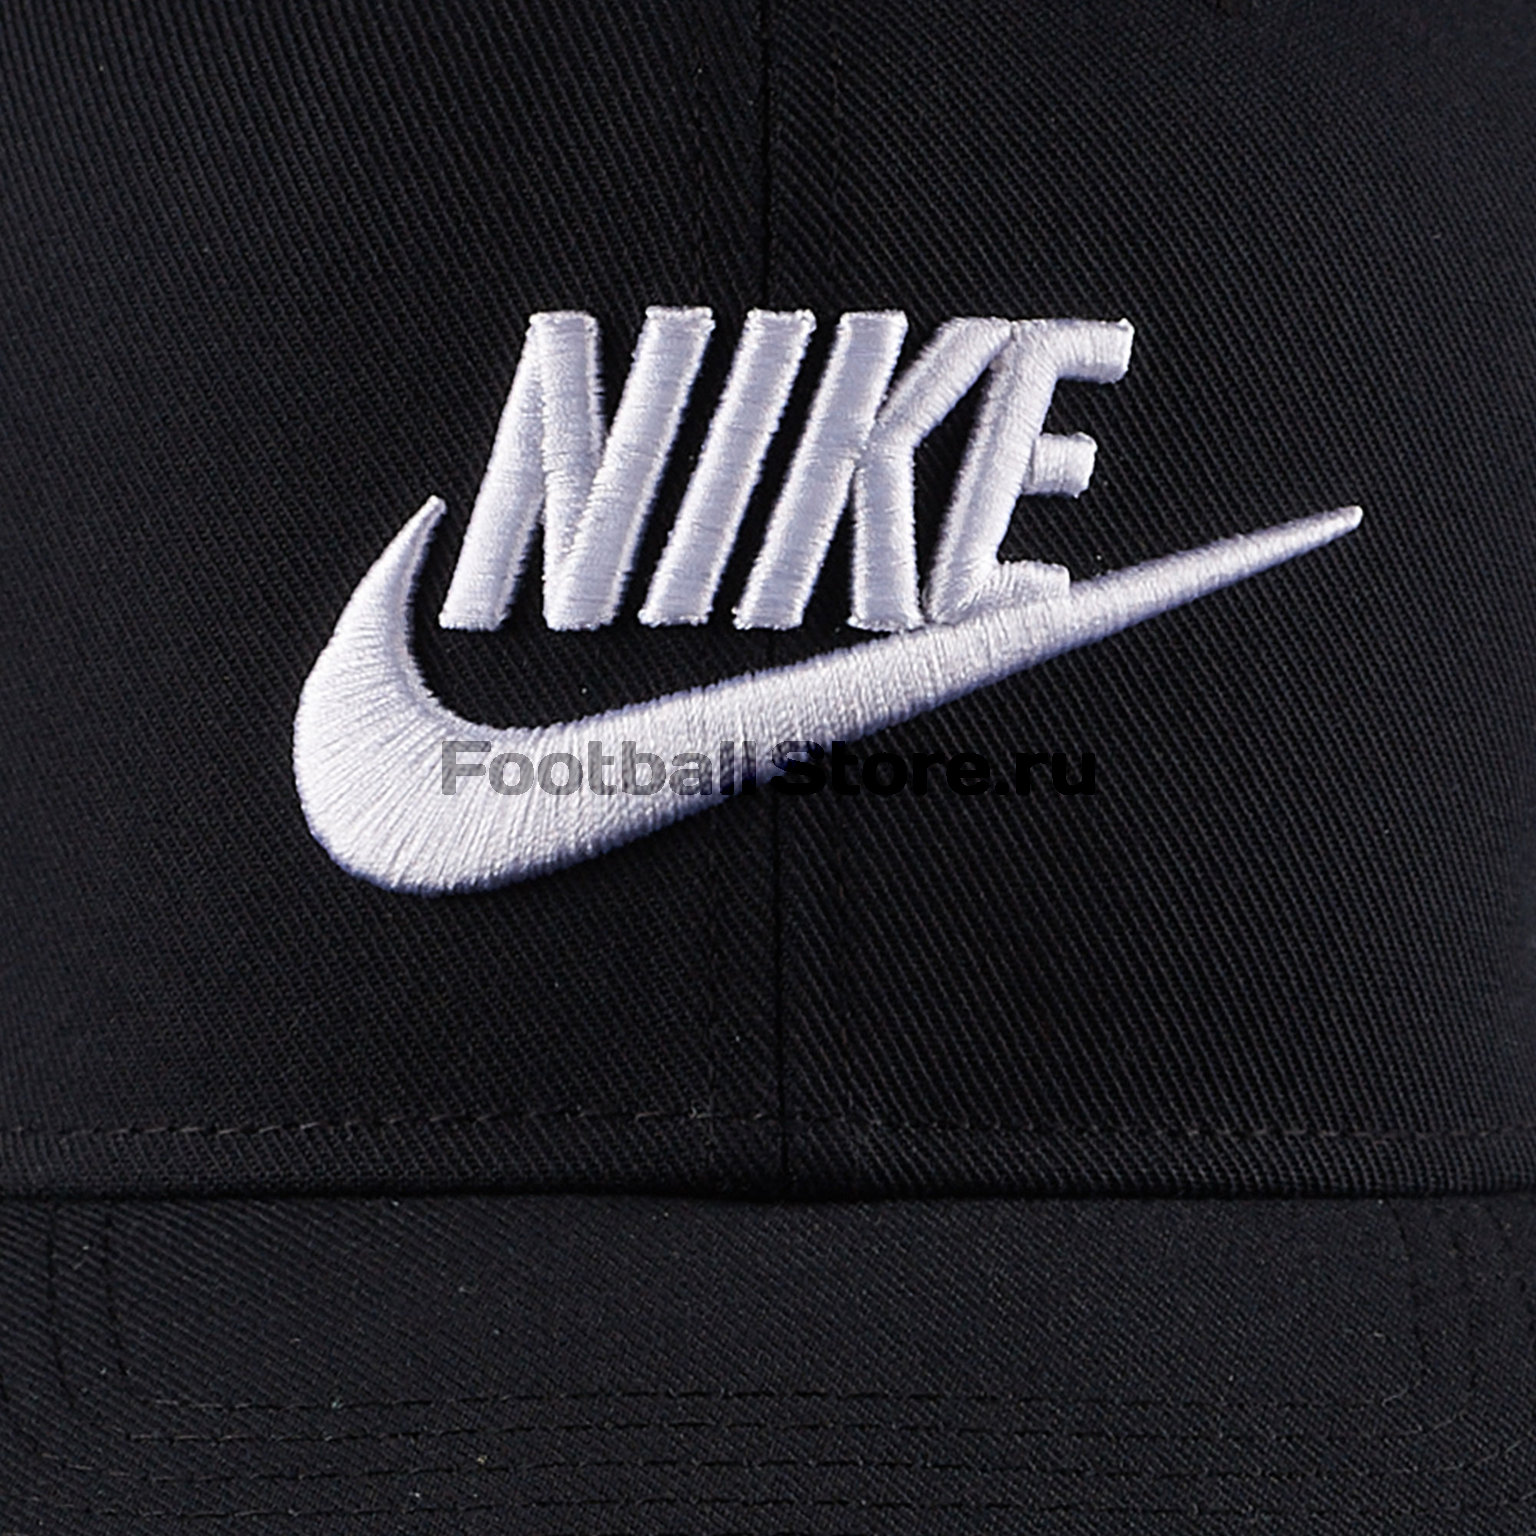 Бейсболка Nike Pro Cap Futura 891284-010